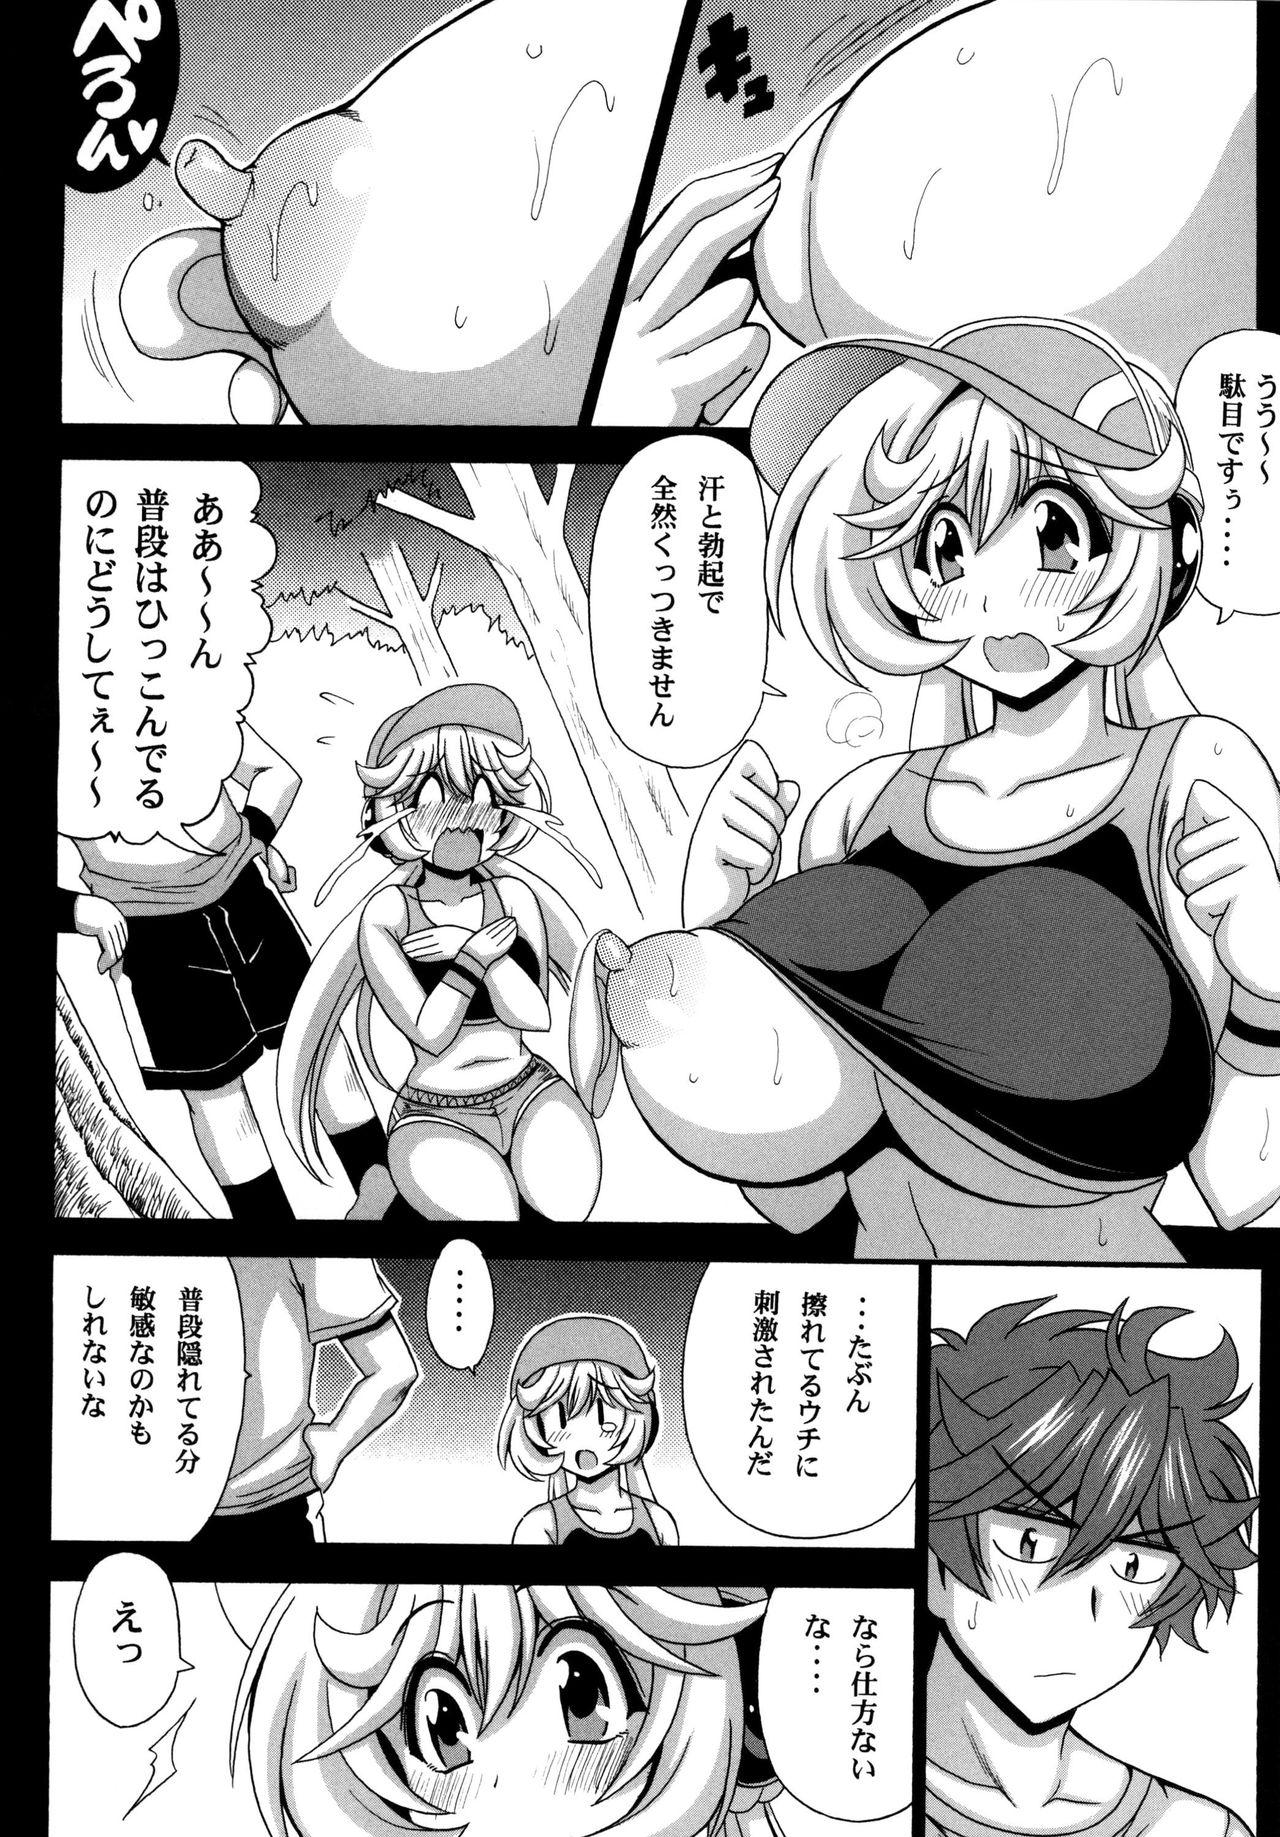 Legs Kono Yoru o Suberu Mono ni Shukufuku o! 5 - Super robot wars Teenie - Page 10